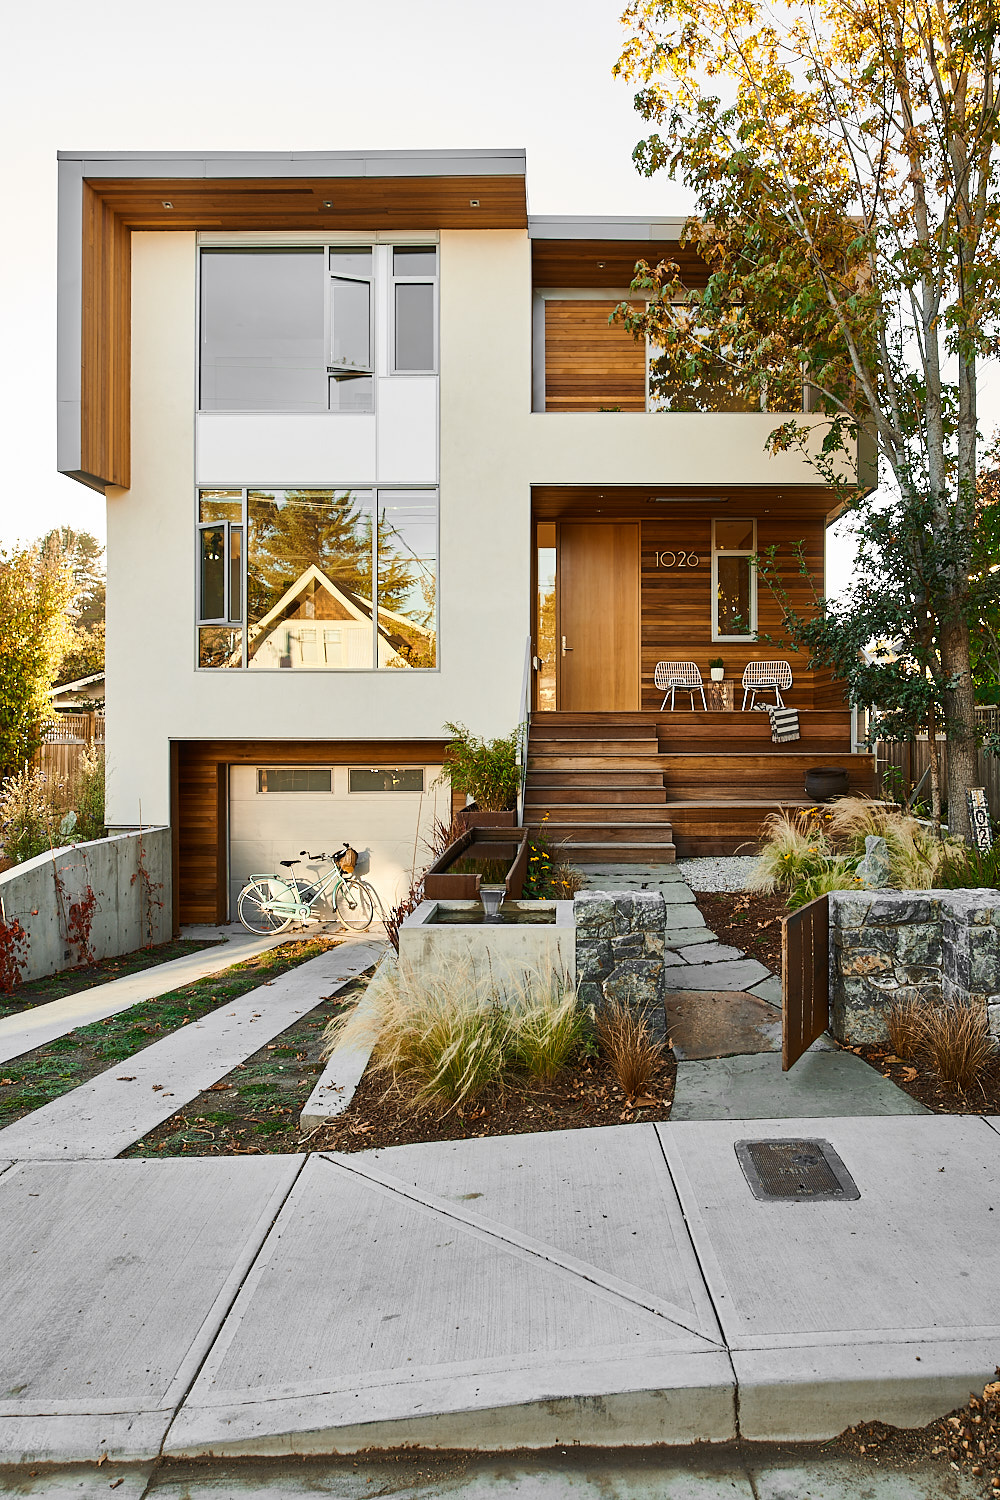 Design Home On Urban Lot In Victoria Bc